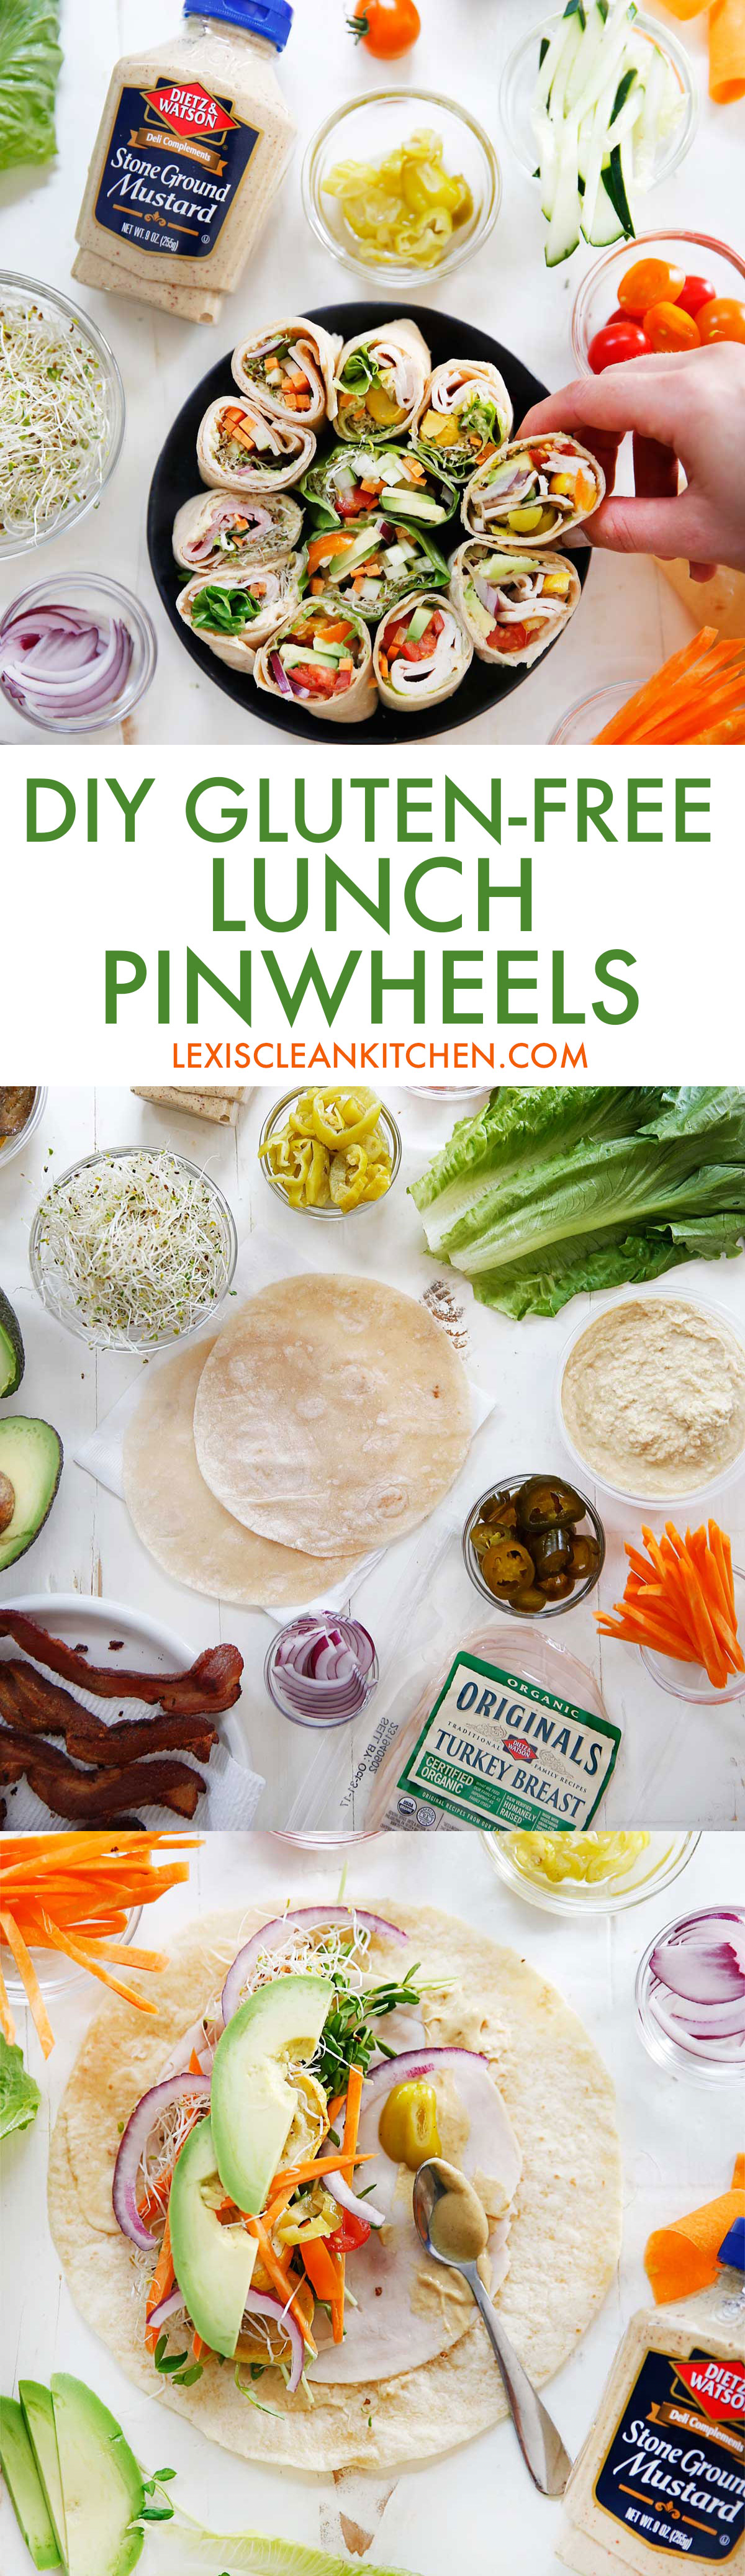 DIY Gluten Free Lunch Pinwheels | Lexi's Clean Kitchen